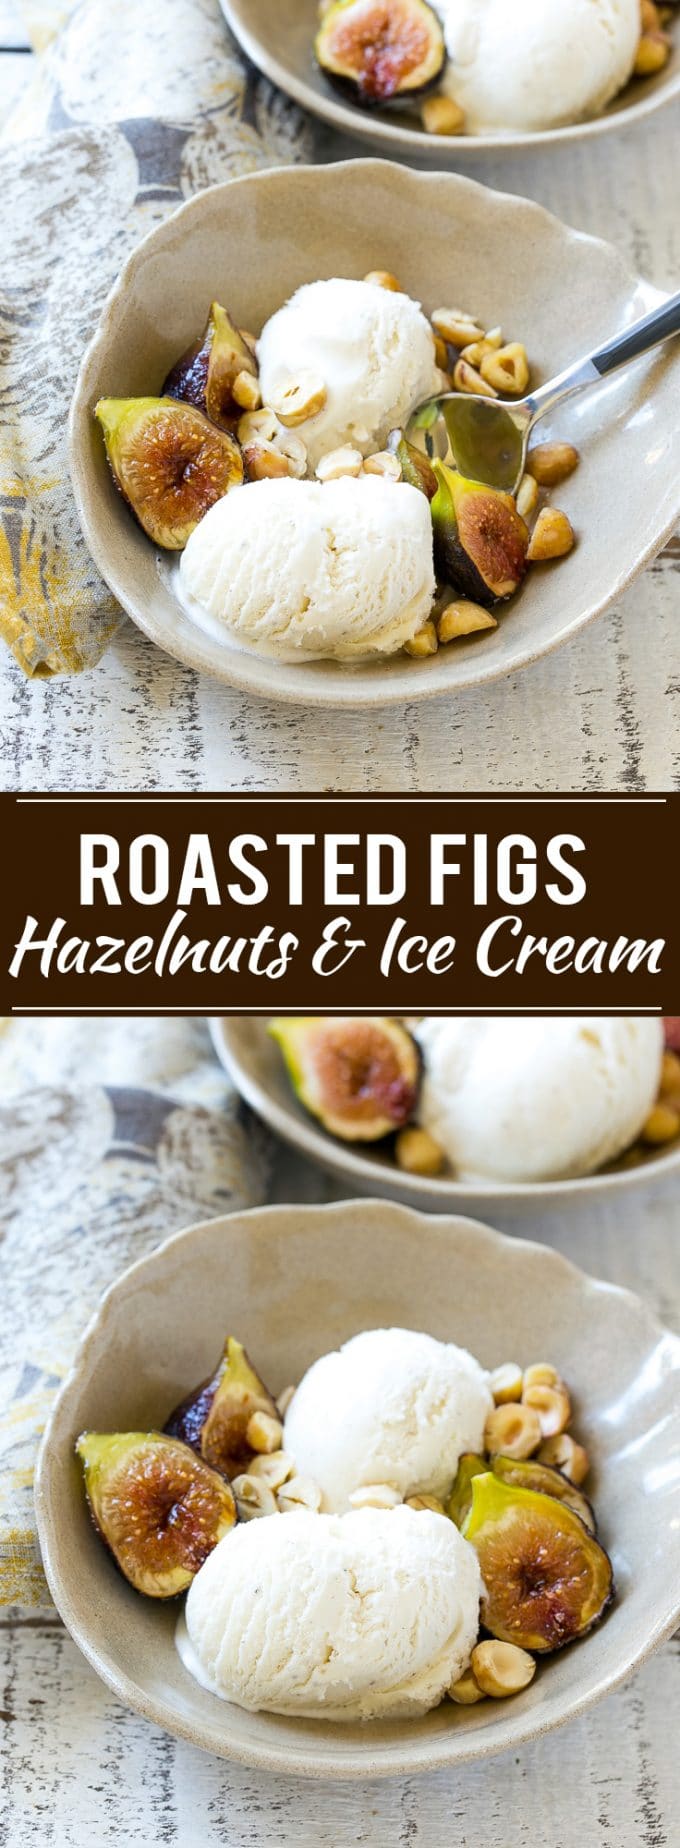 Spice Roasted Figs with Vanilla Ice Cream Recipe | Roasted Figs | Easy Ice Cream Recipe | Fig Recipe #figs #dessert #icecream #dinneratthezo